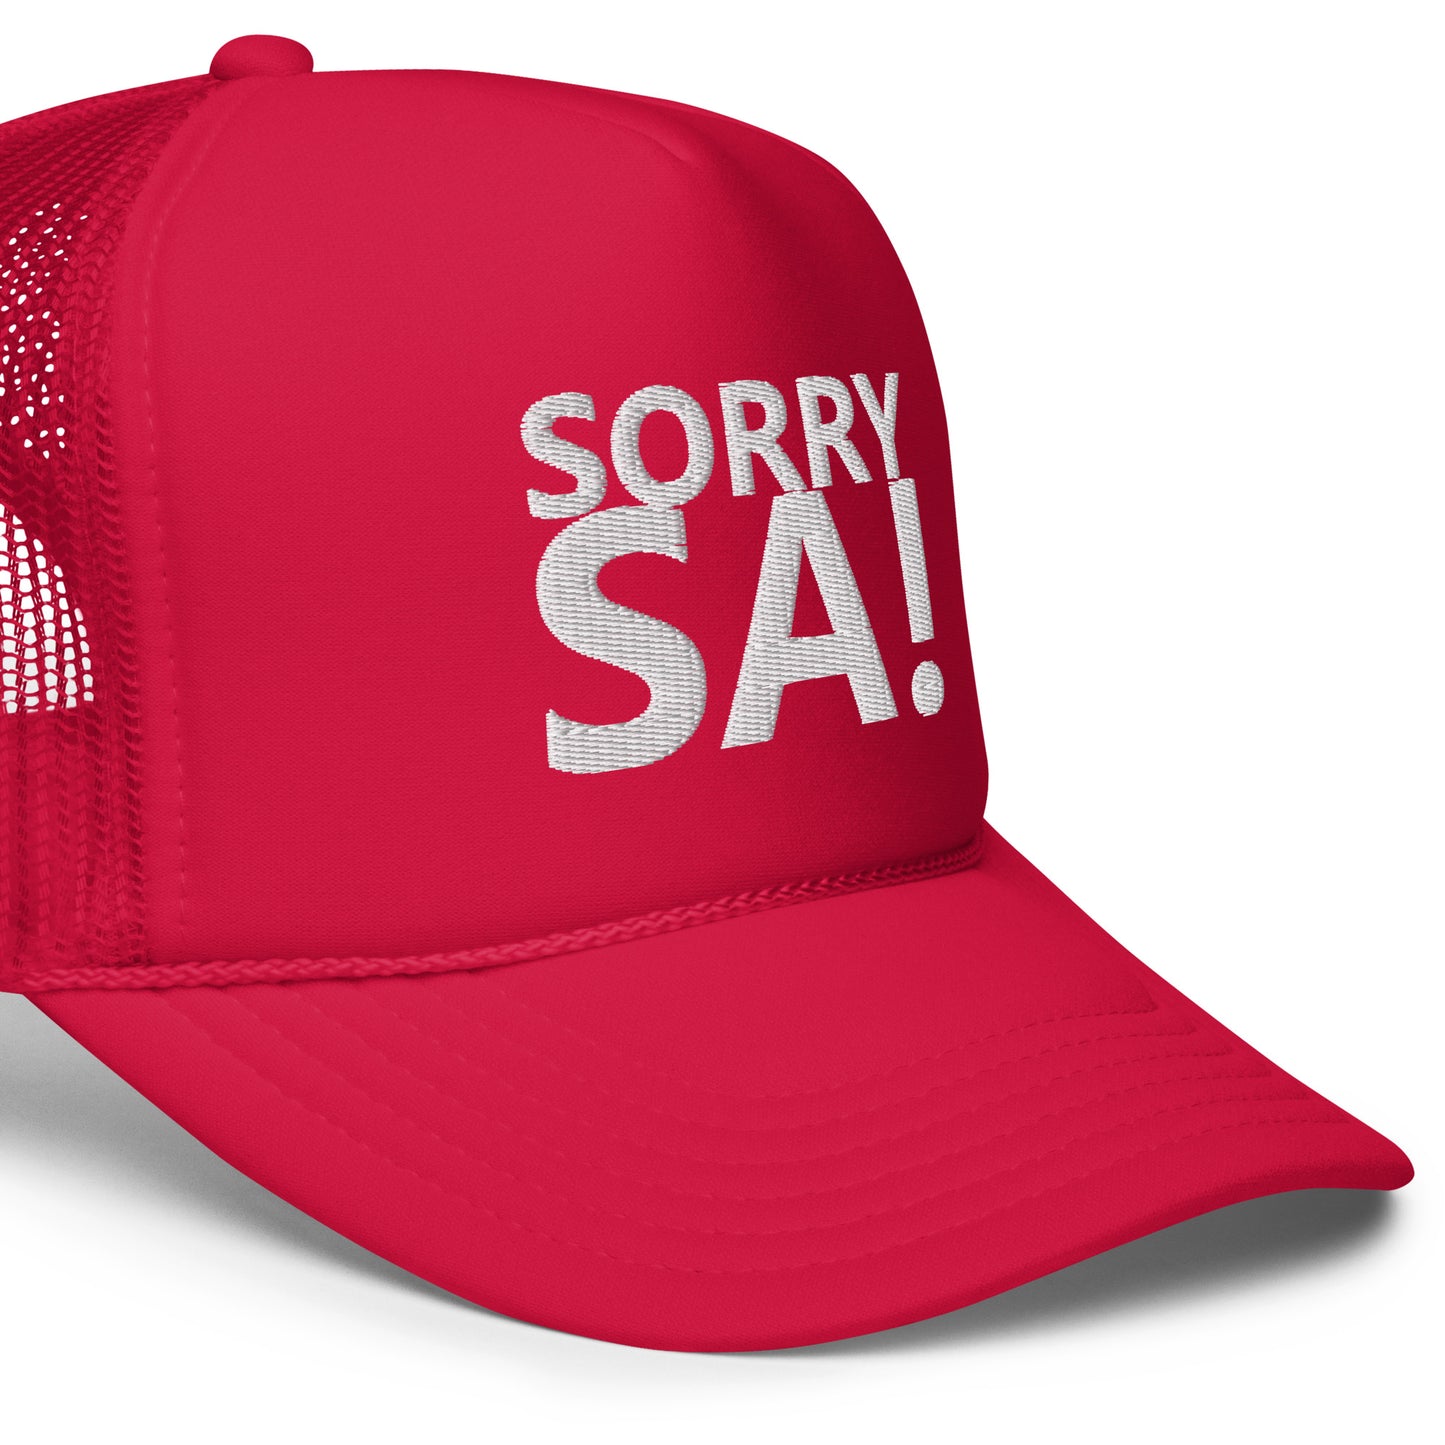 SORRY SA! Foam trucker hat